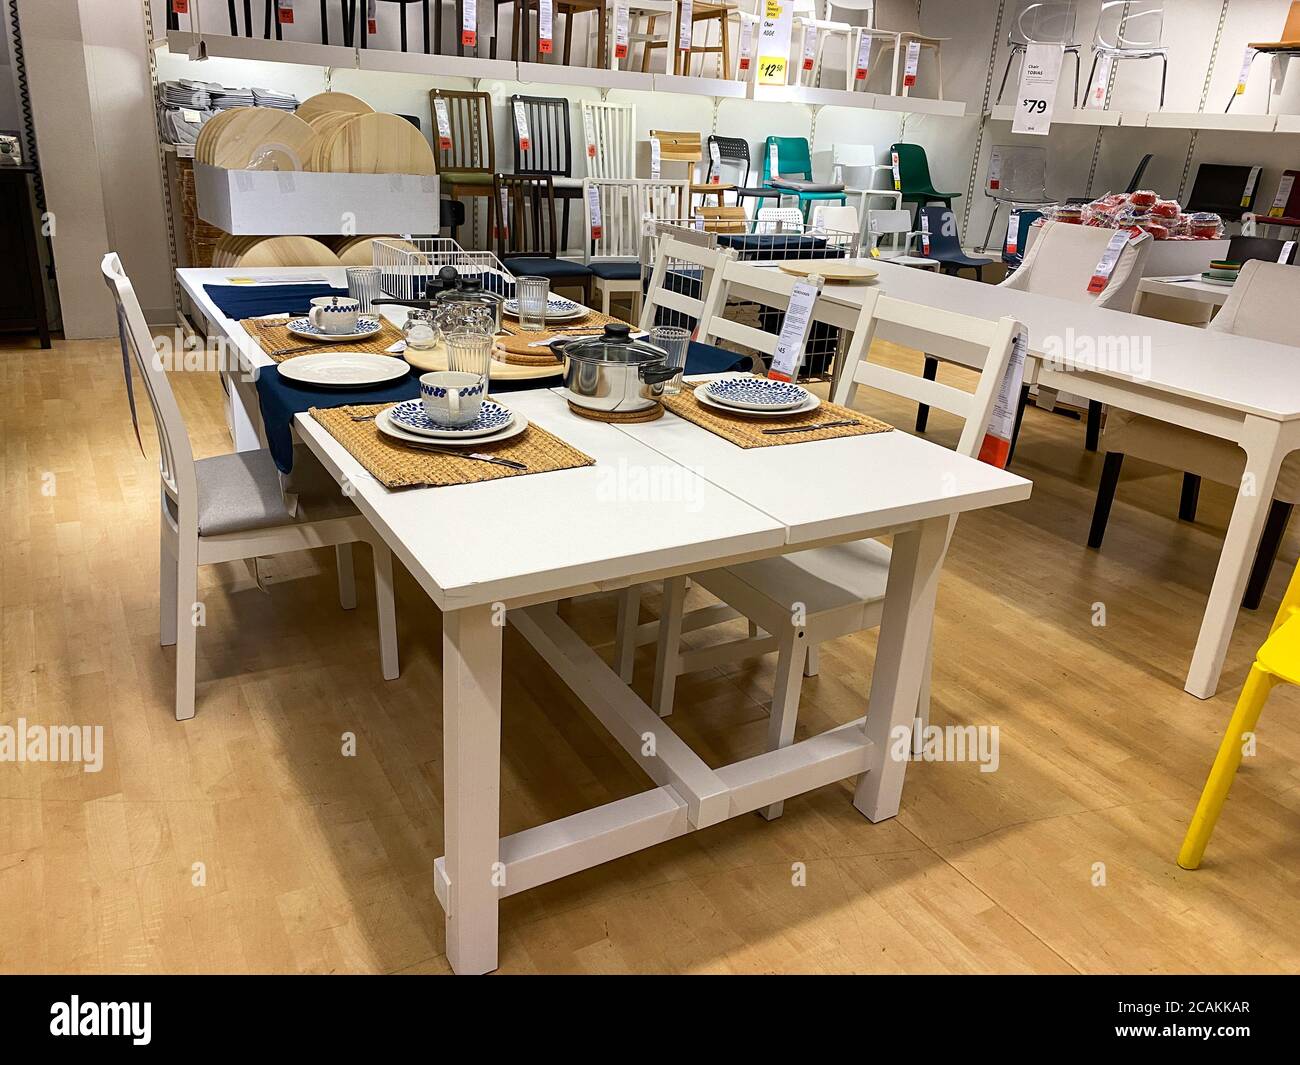 Orlando,FL/USA- 7/4/20: Une table de salle à manger avec des plats et des couverts dans un magasin IKEA à Orlando, Floride. Banque D'Images